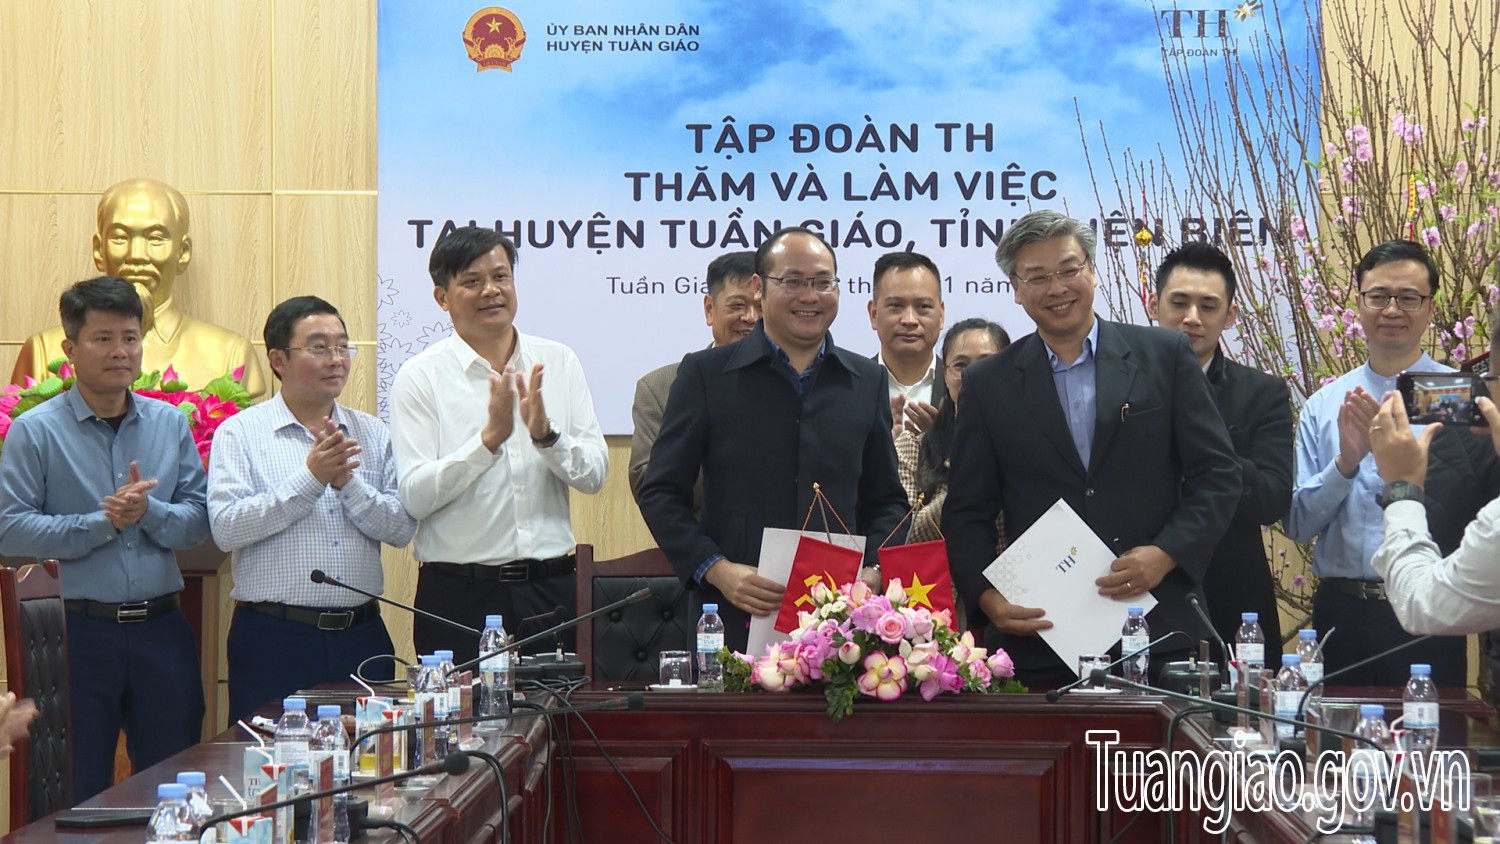 Lễ ký kết biên bản ghi nhớ hợp tác giữa UBND huyện Tuần Giáo và Tập Đoàn TH về việc hợp tác phát triển vùng lõi Mắc ca trên địa bàn huyện